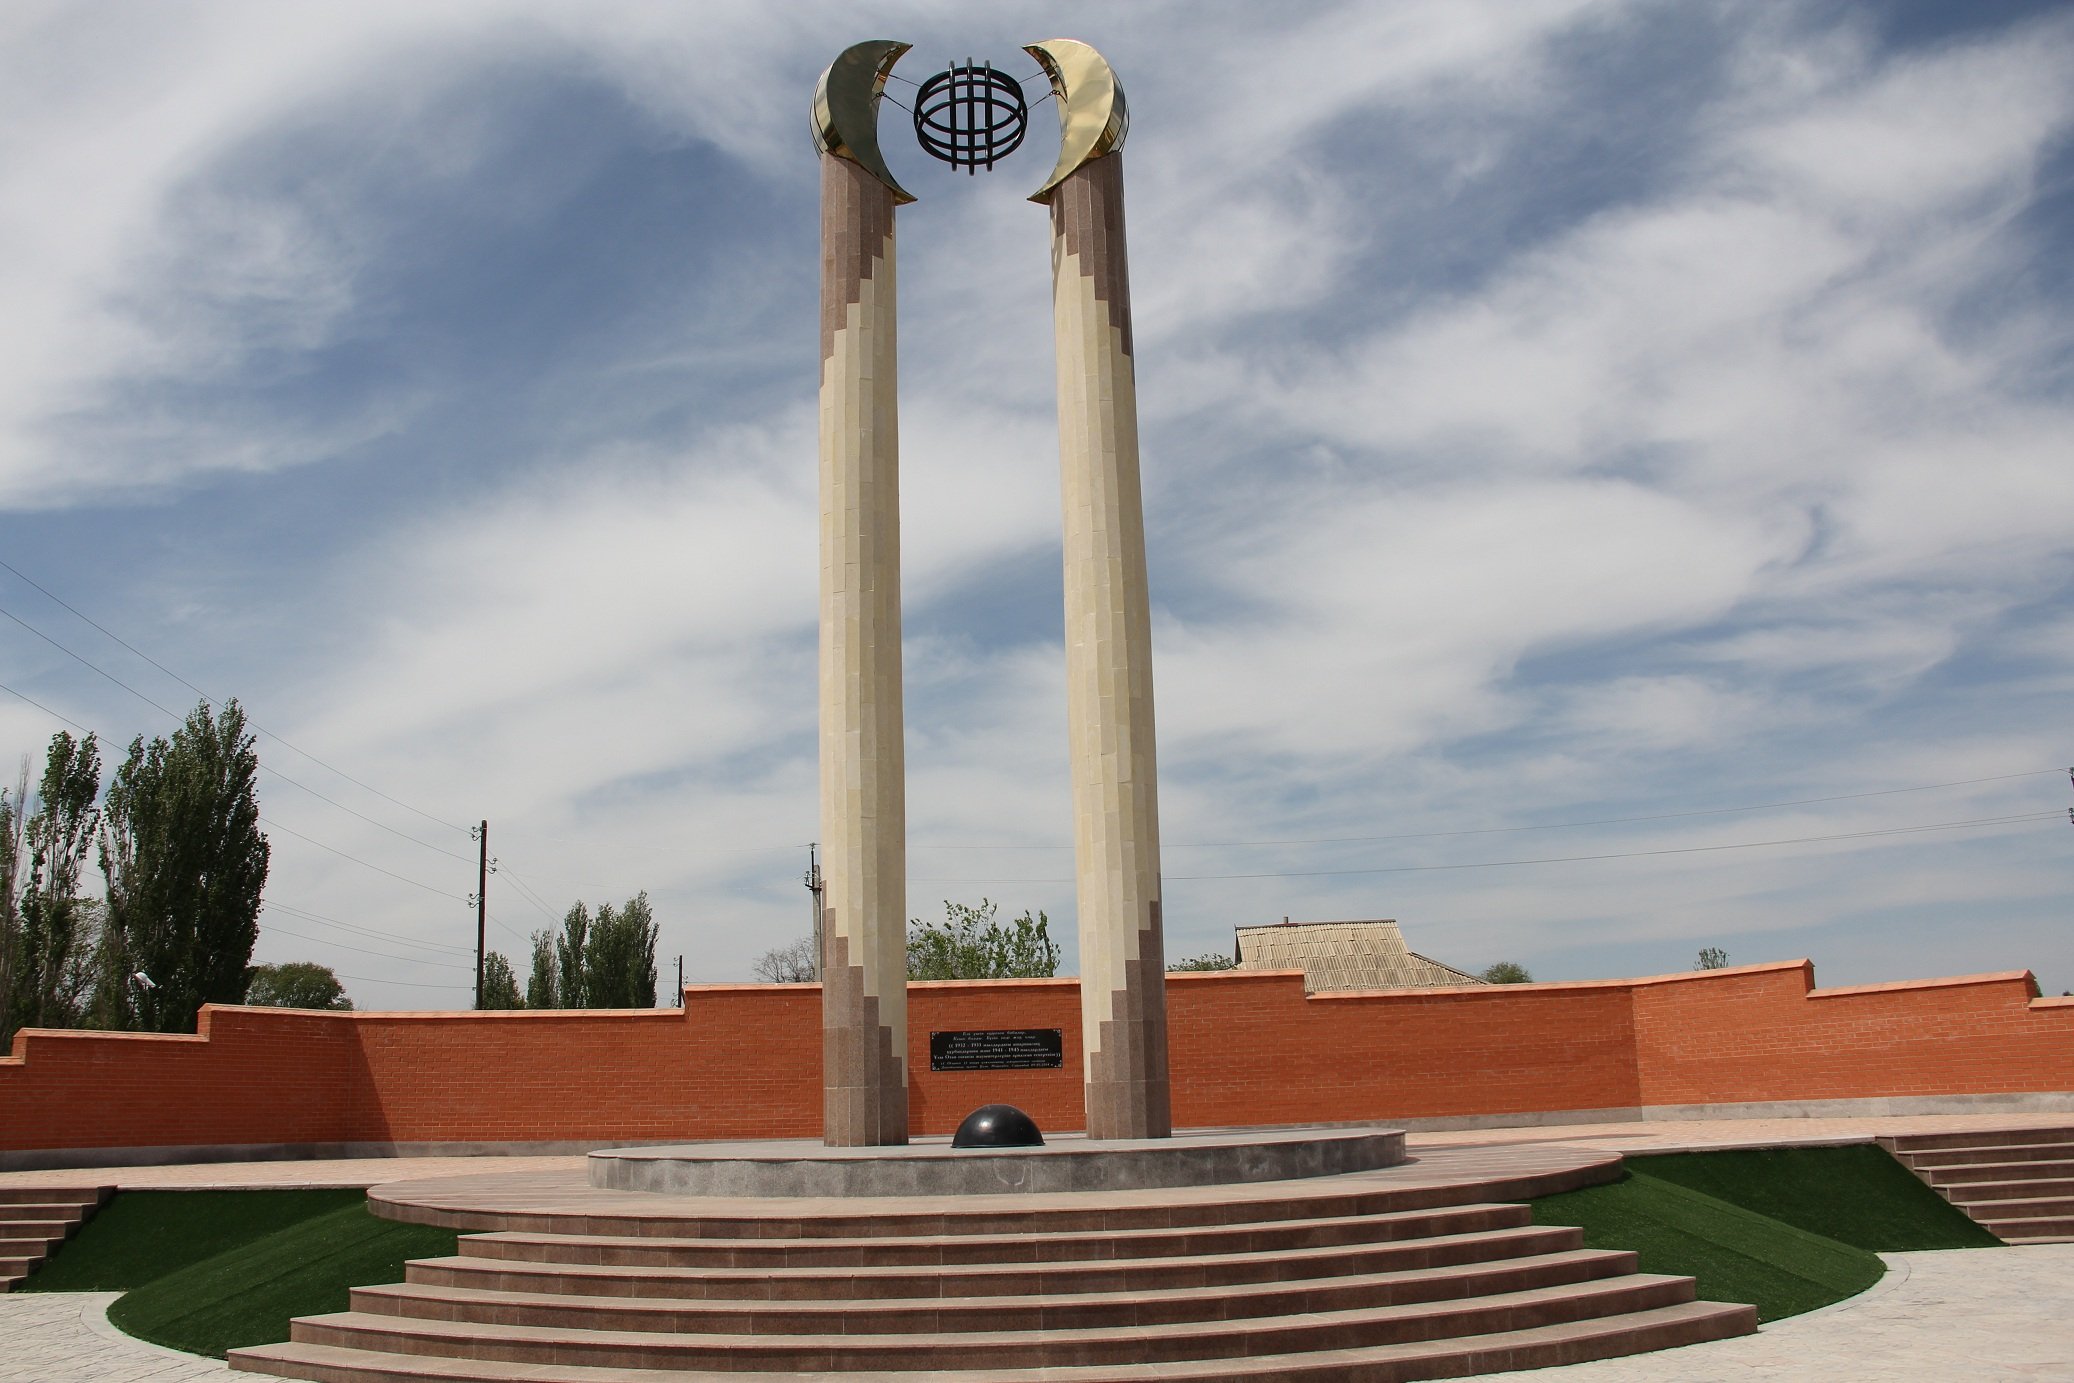 с. Жарлысу Рыскуловского р-на. Монумент воинам, погибшим во время Великой Отечественной войны, был открыт в 2015 году. Архитектор - Бахыт Сегизбаев.